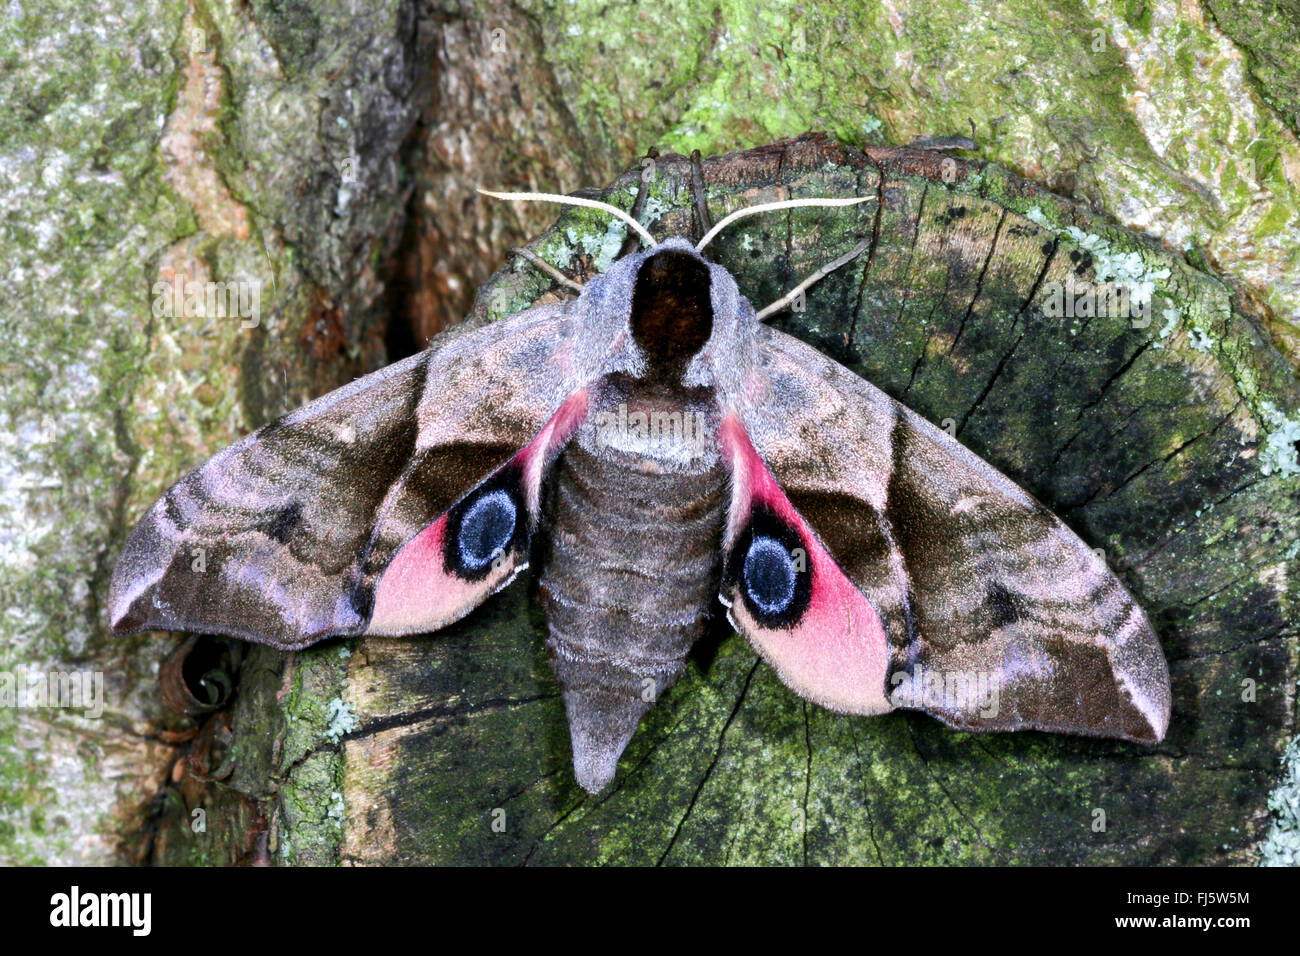 Eyed Hawk-Moth, Eyed Hawkmoth, Hawkmoths Hawk-moths (Smerinthus ocellata, Smerinthus ocellatus), on a tree trunk, Germany Stock Photo